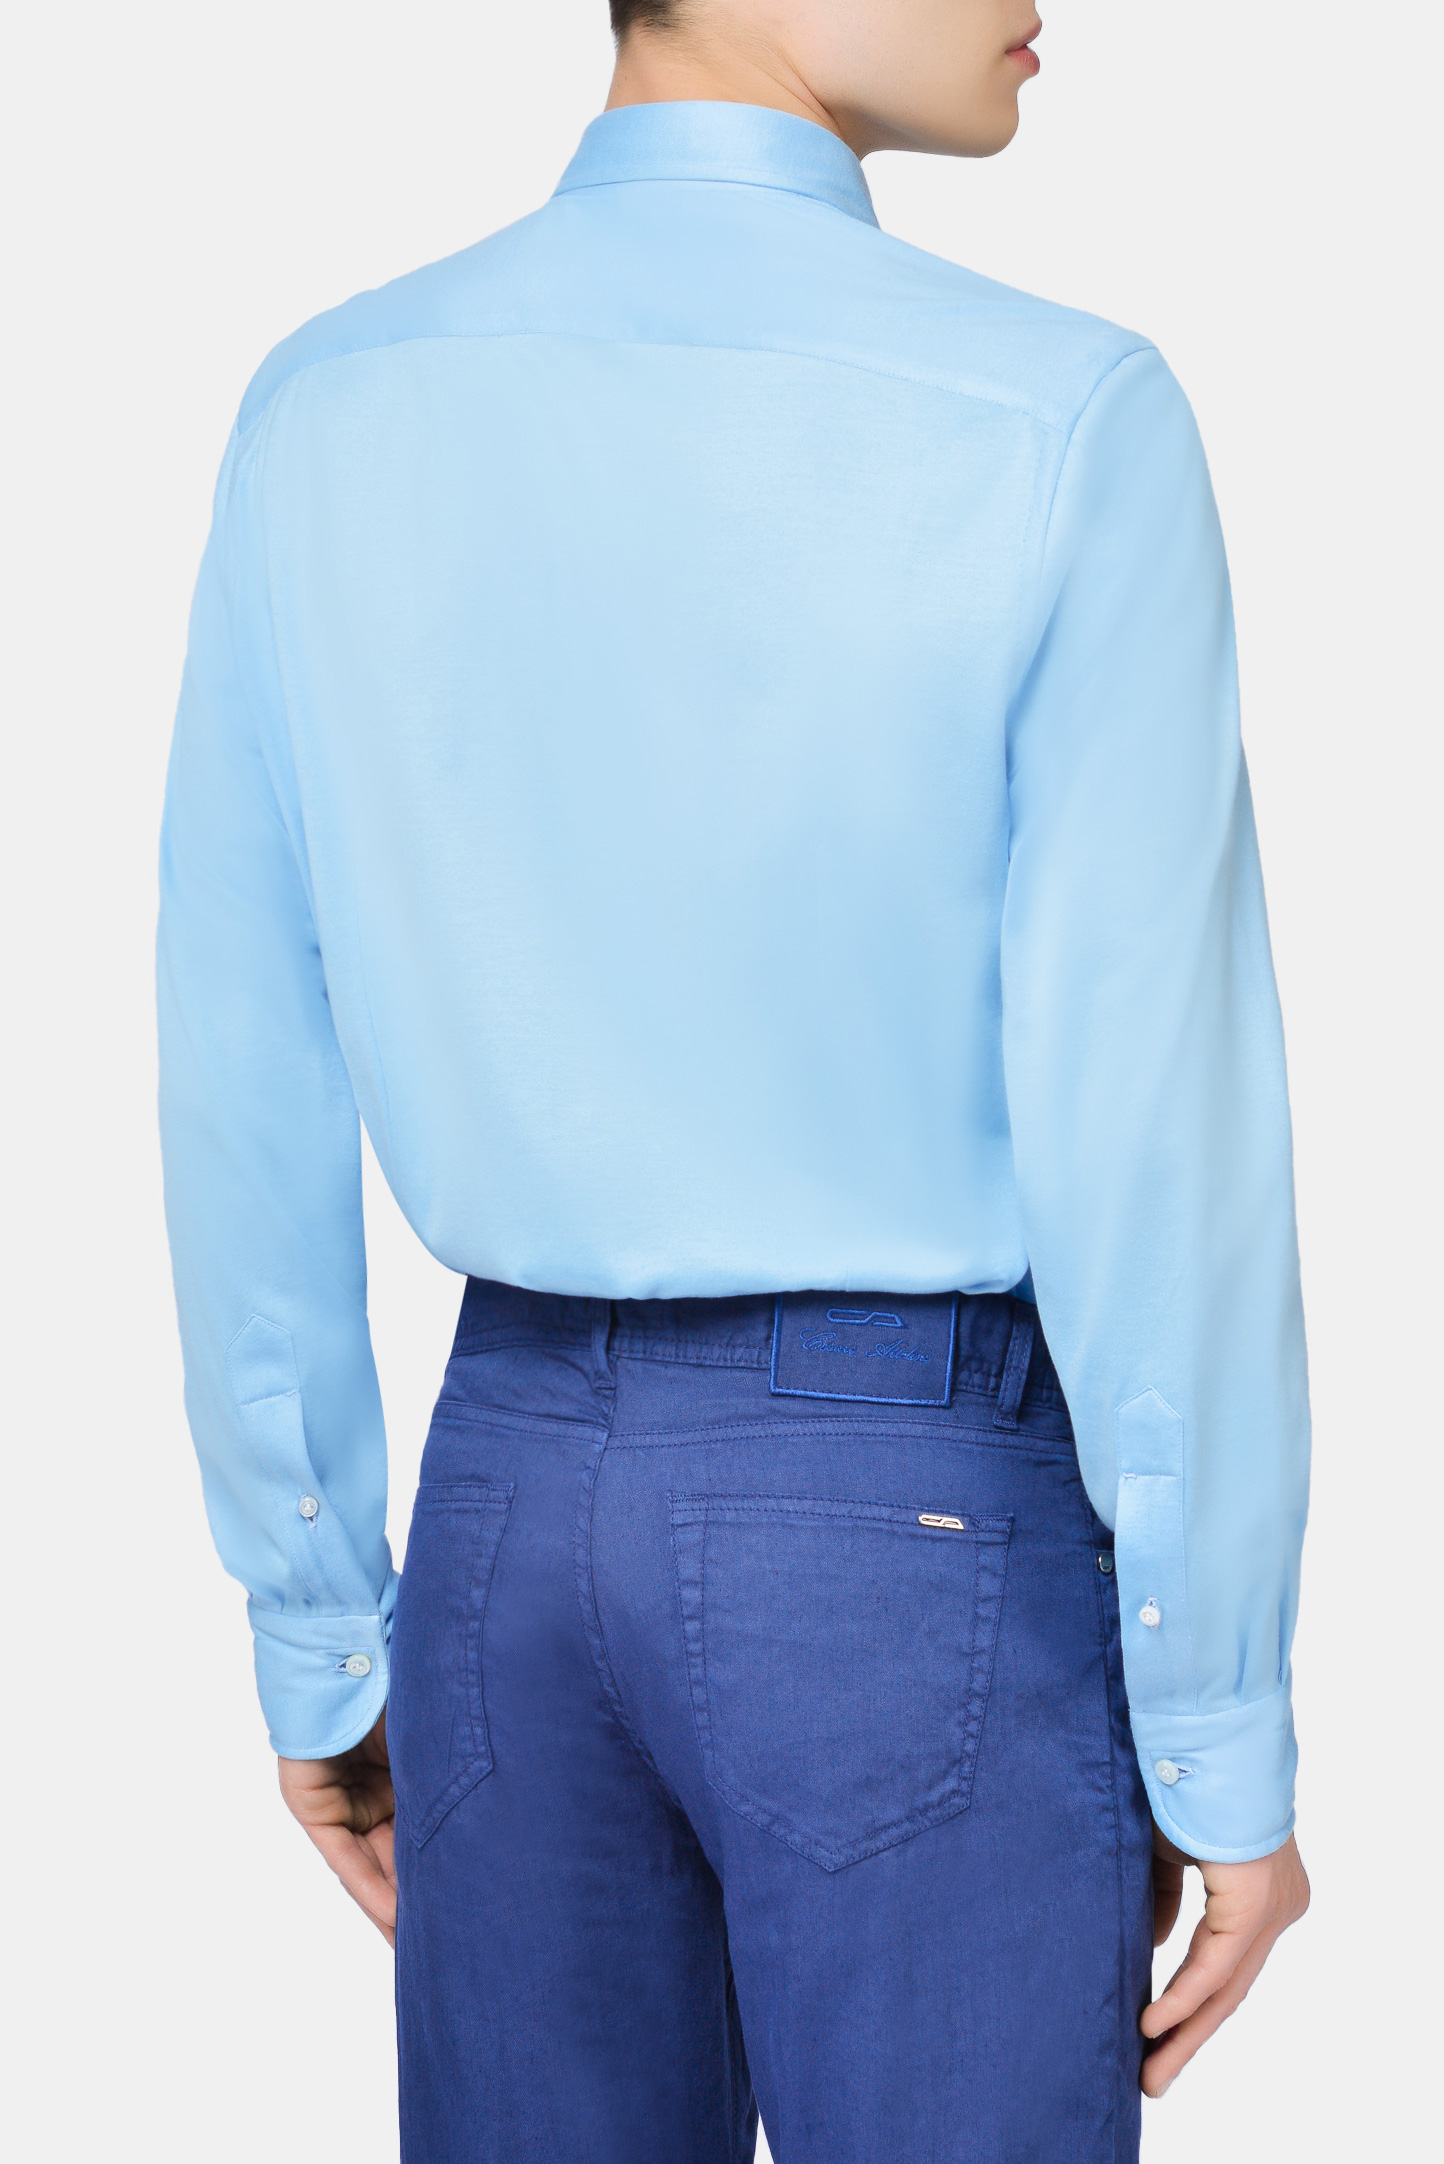 Рубашка CESARE ATTOLINI CAU28JS/MIKE S20CMJS50, цвет: Голубой, Мужской